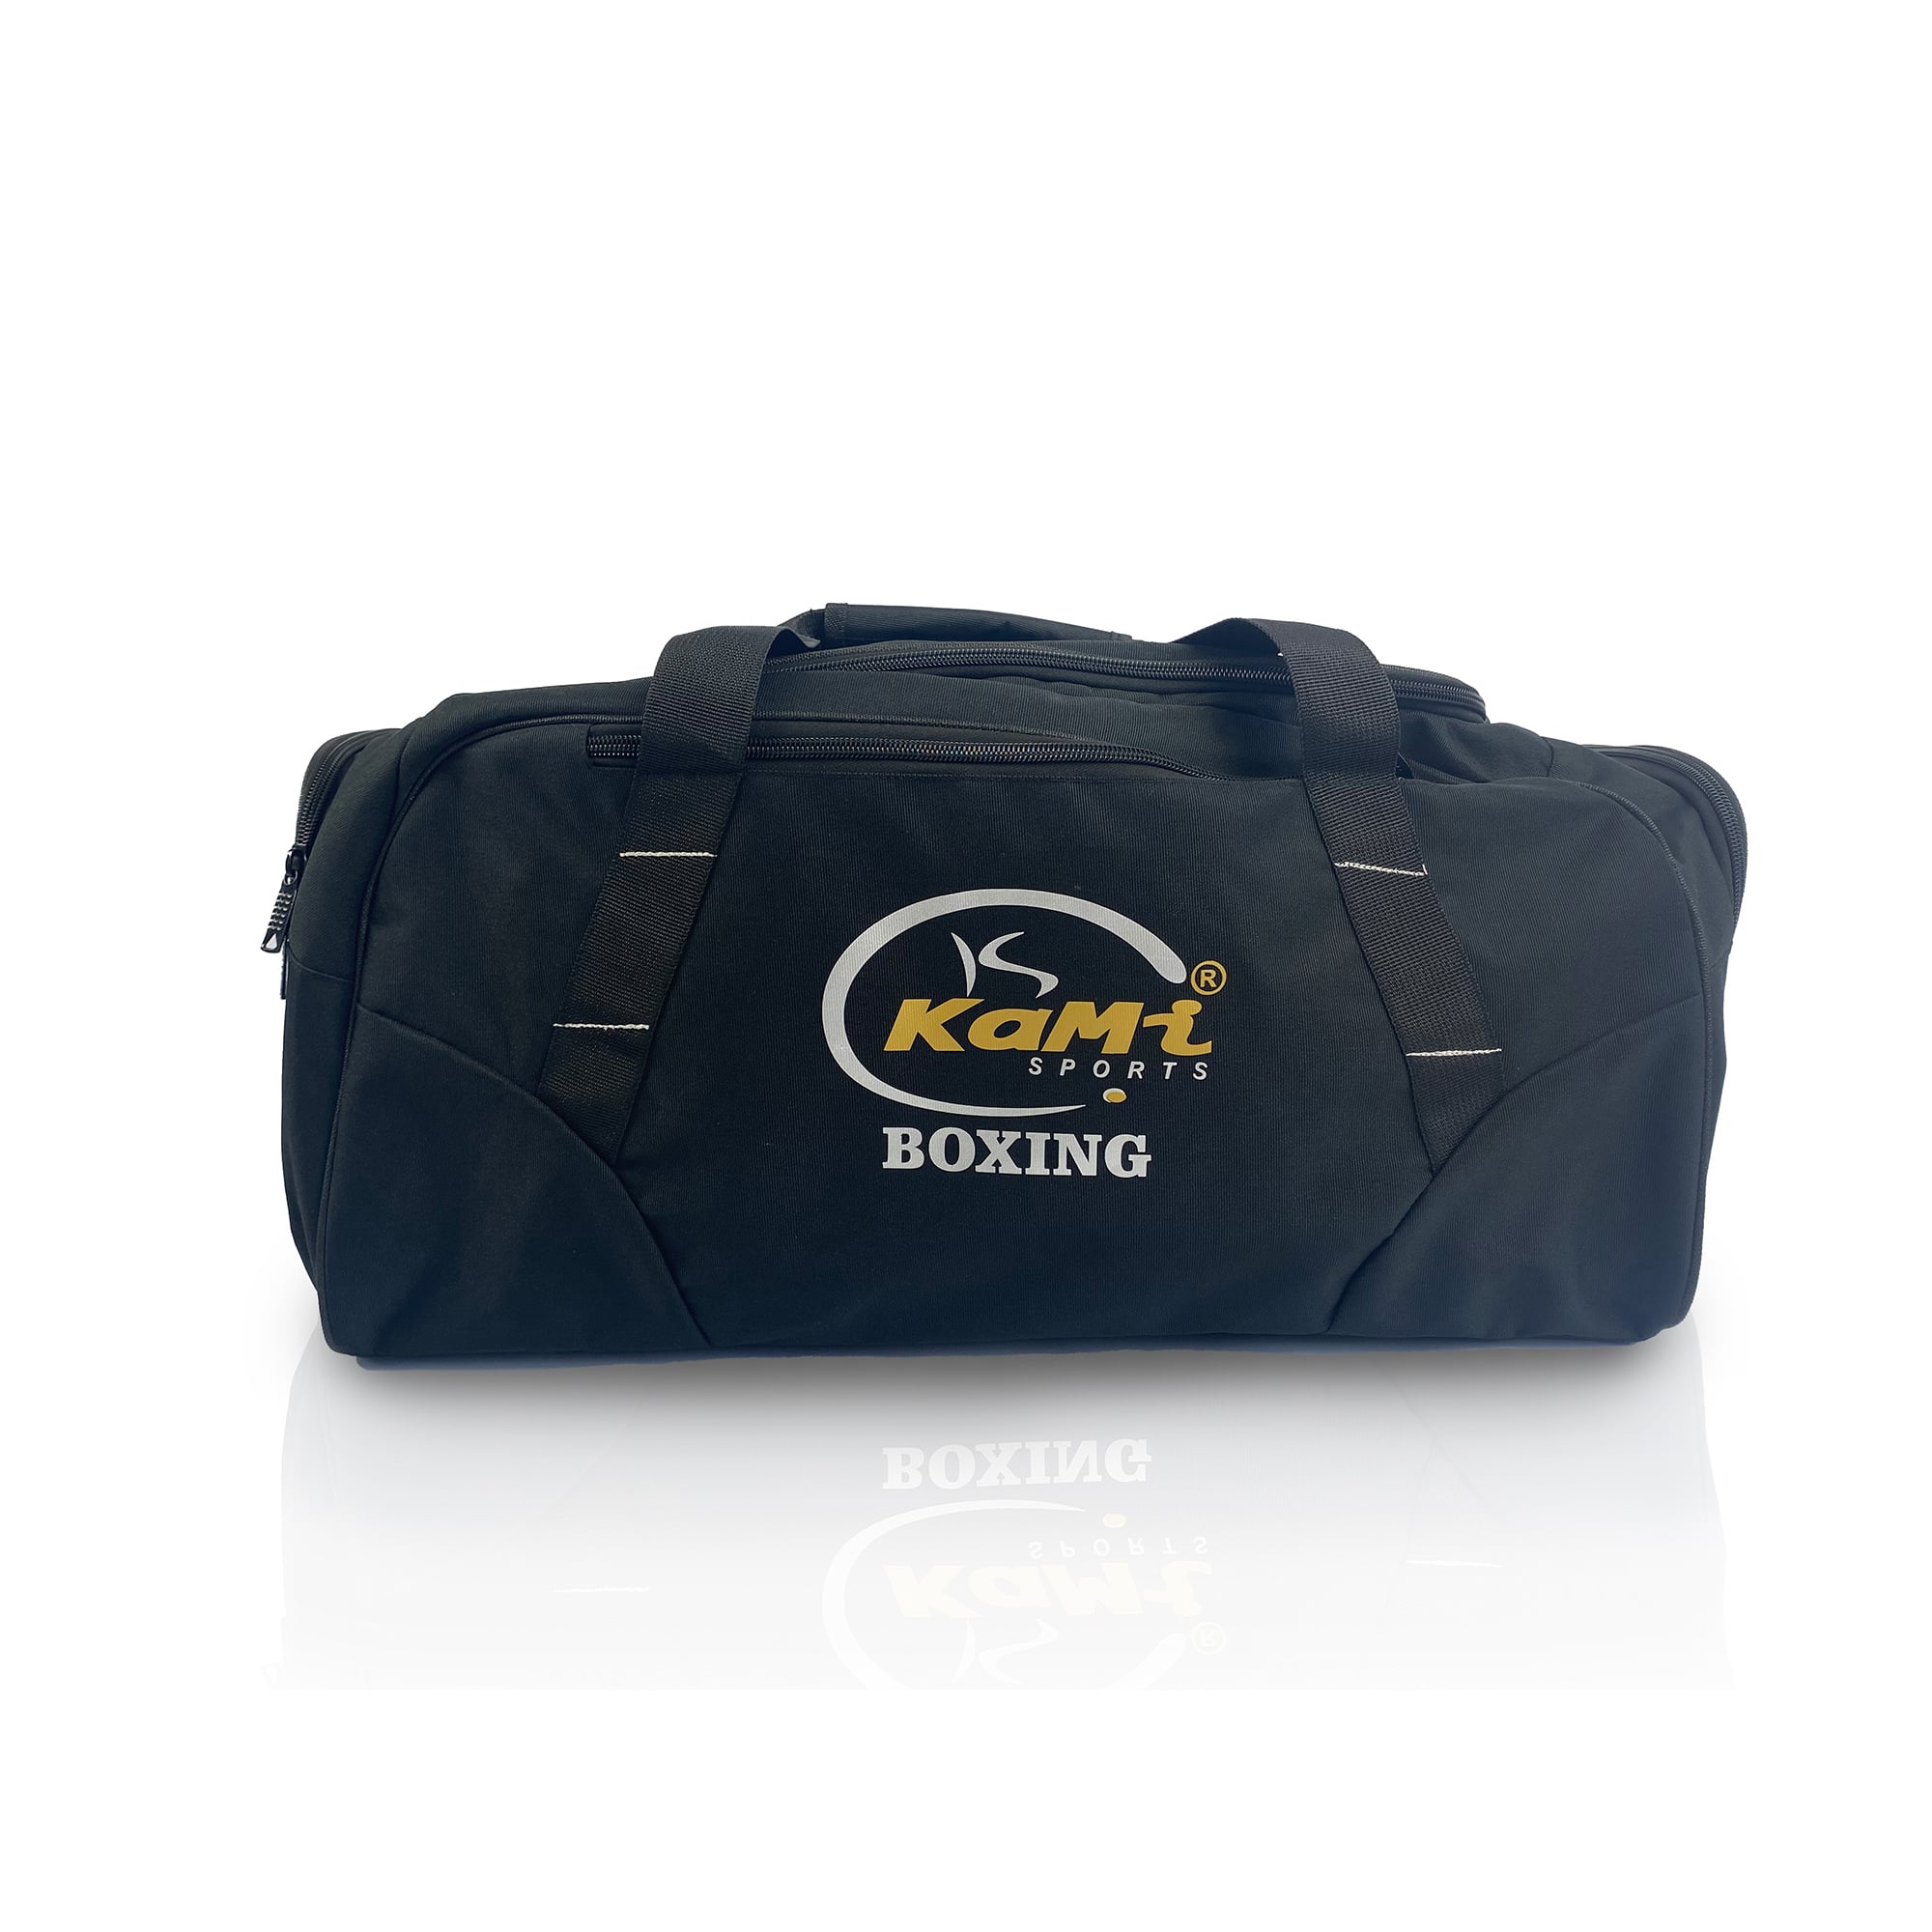 Stilvolle schwarze Sporttasche mit Logo und 'Boxing'-Aufdruck, geräumig, praktisch, individuelles Design, robust und wasserfest.